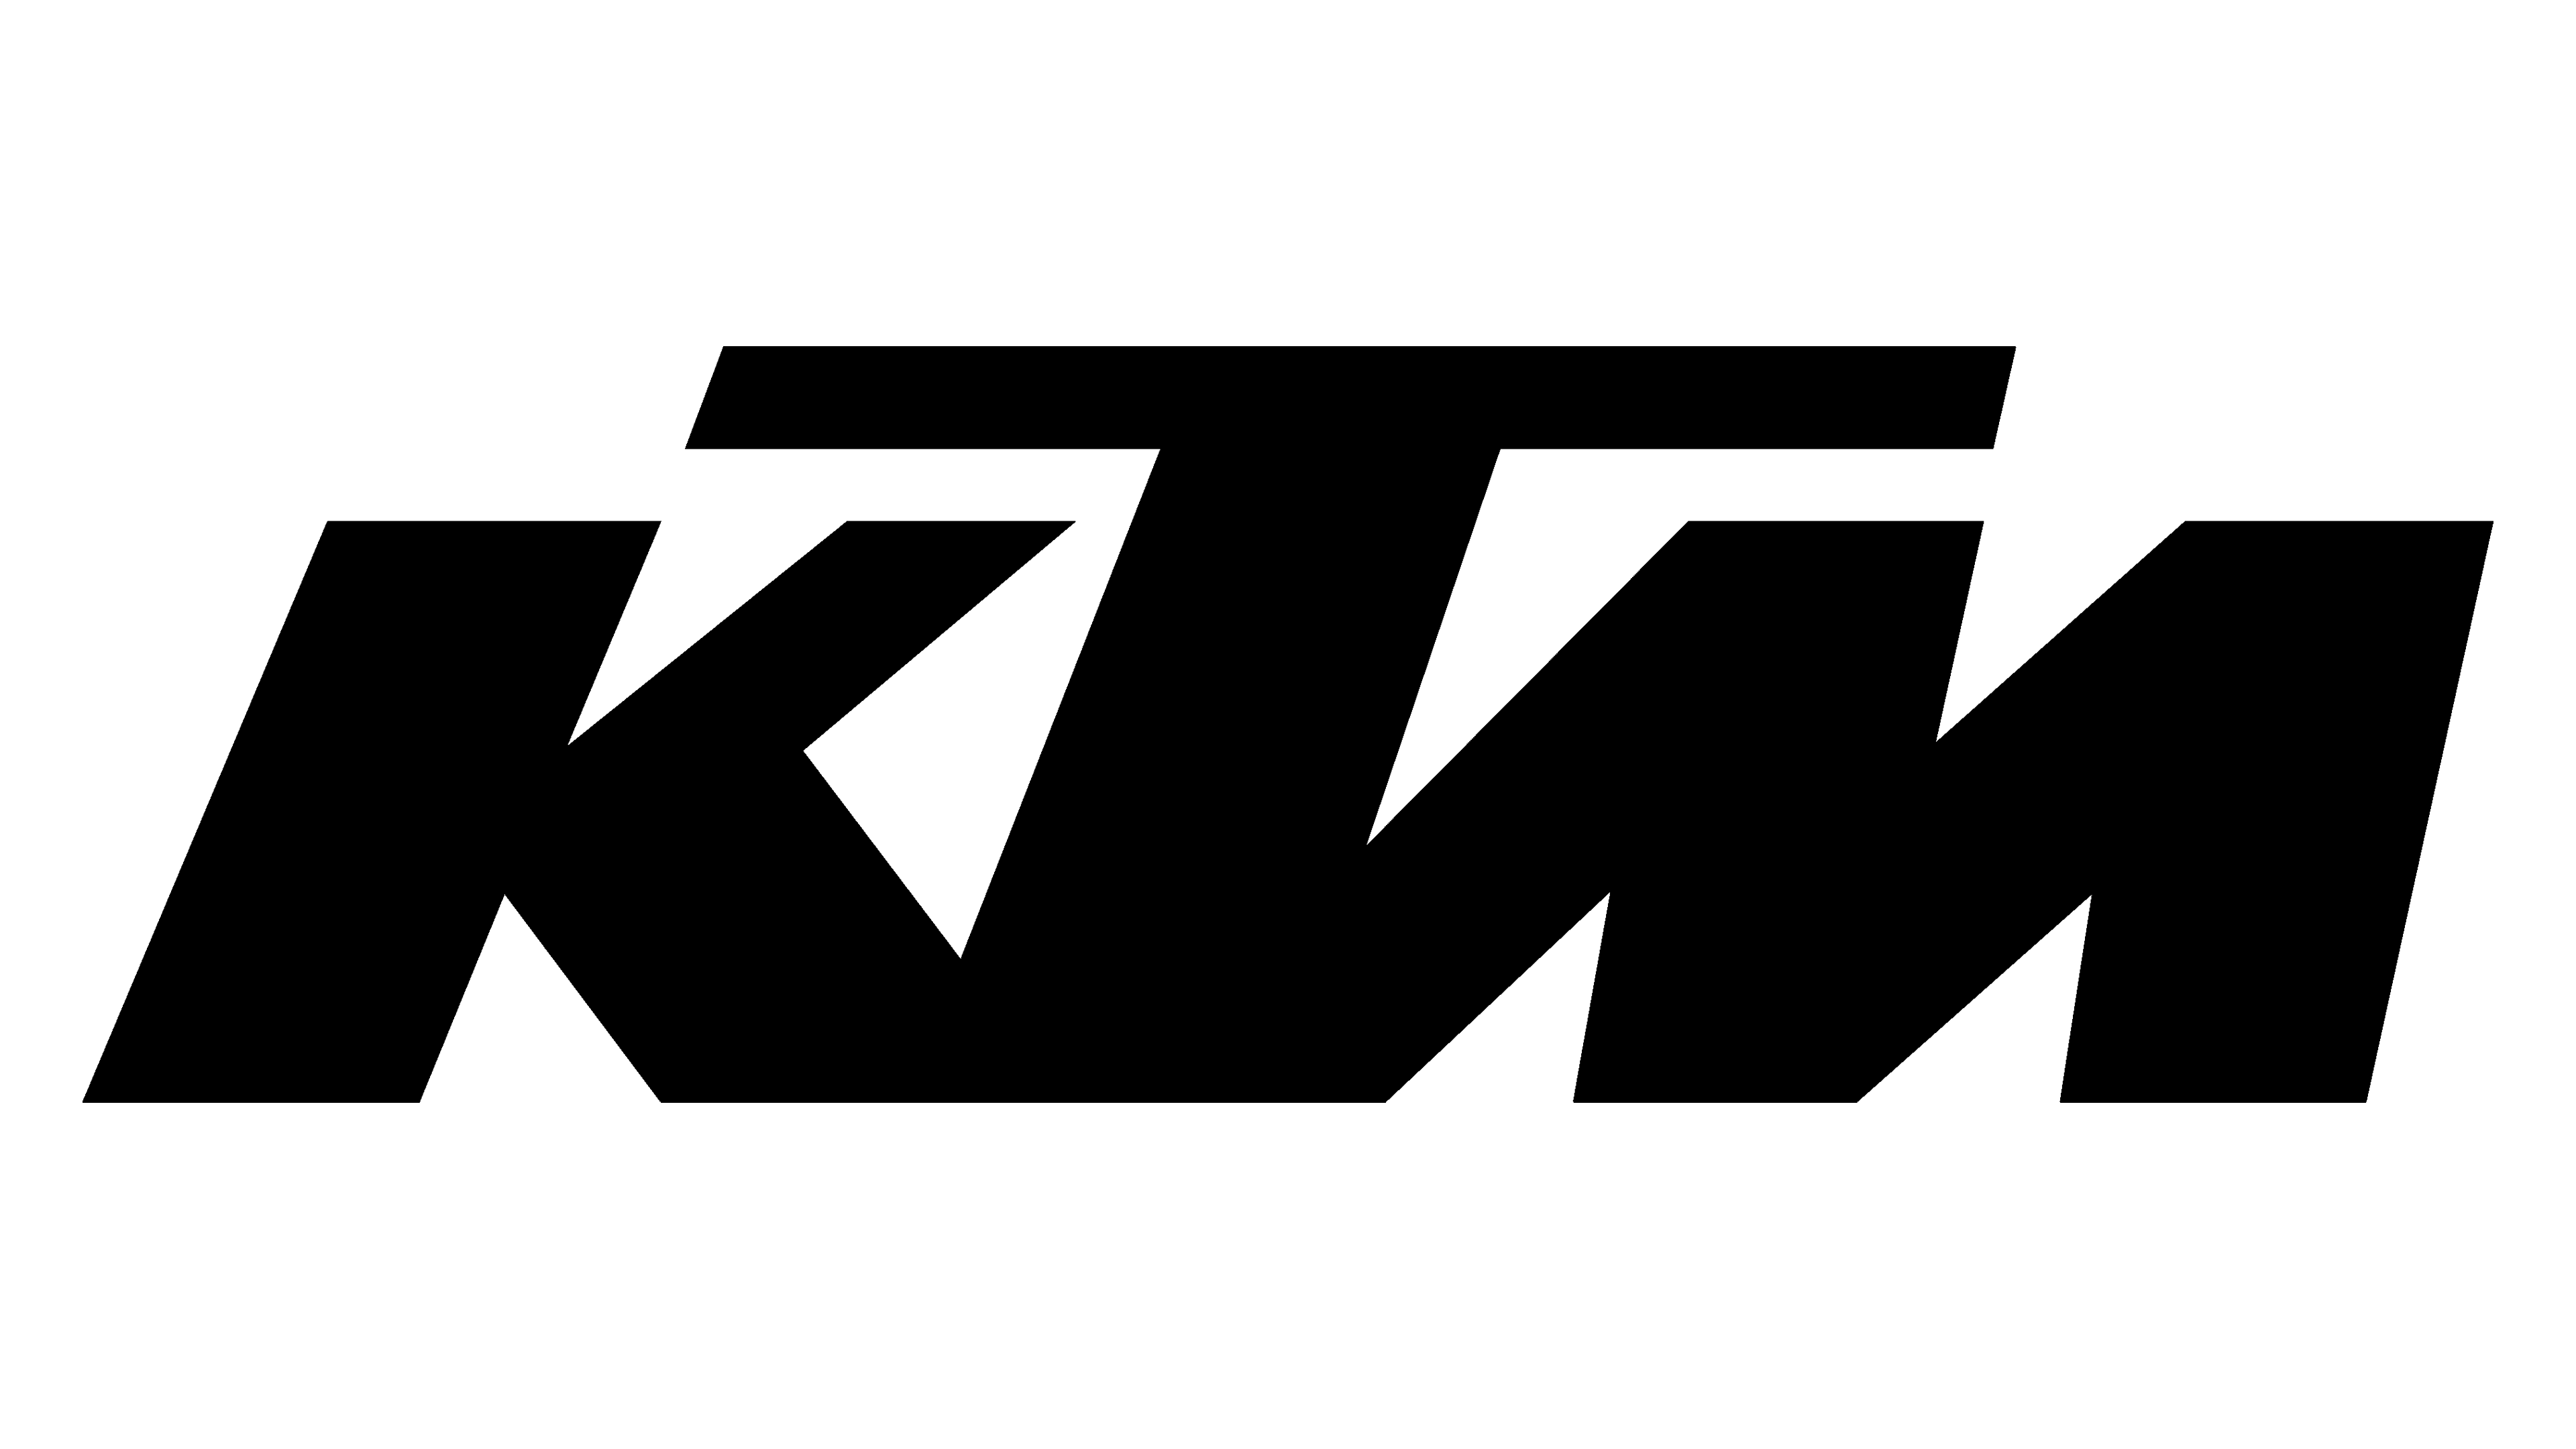 Ktm logo HD wallpapers | Pxfuel